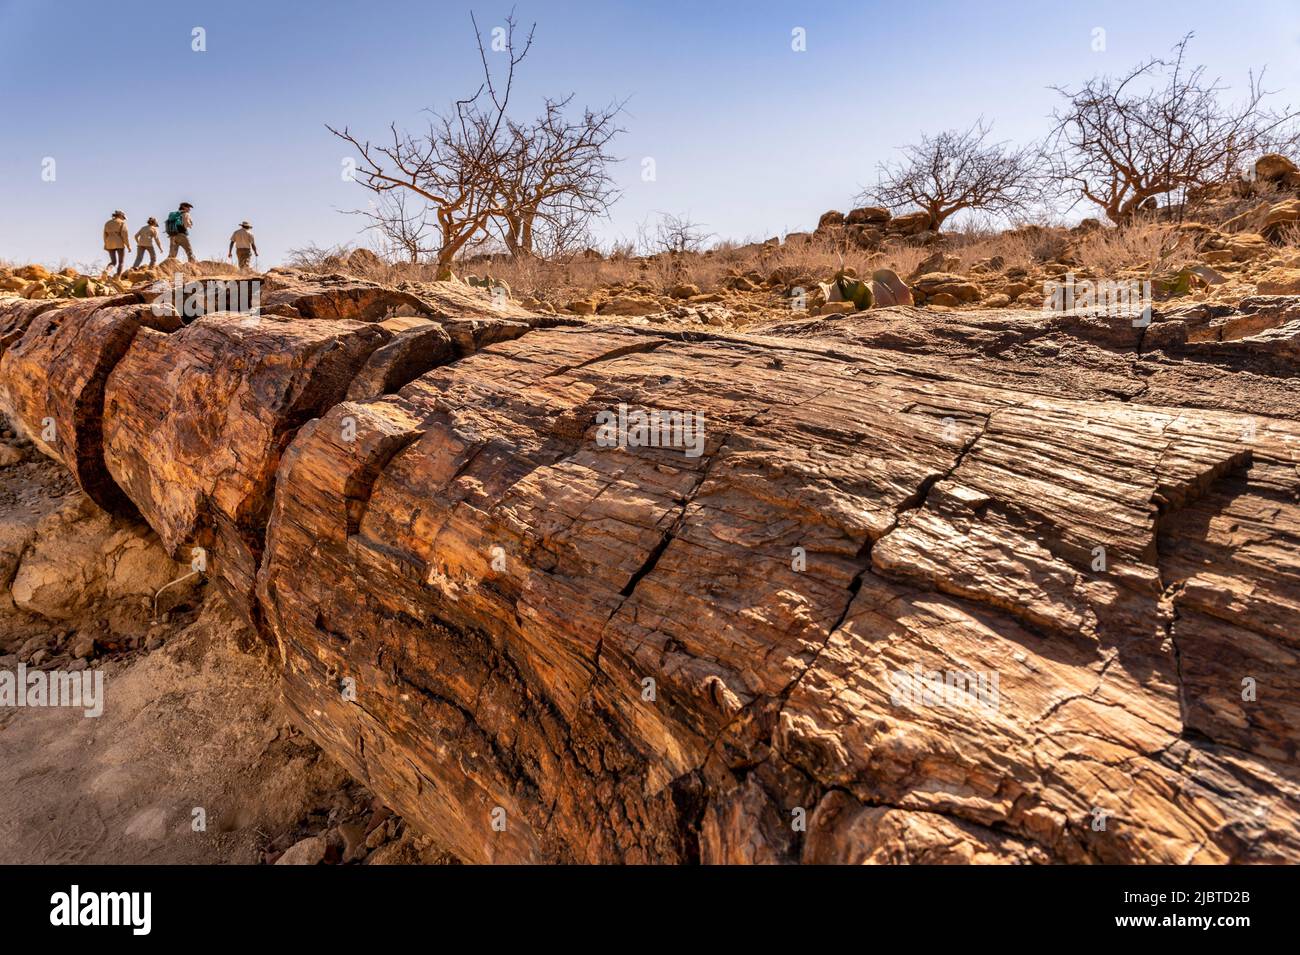 Namibia, Kunene, Damaraland, Khorixas, versteinerte Wälder aus 260 Millionen Jahren, die von der UNESCO zum Weltkulturerbe erklärt wurden Stockfoto